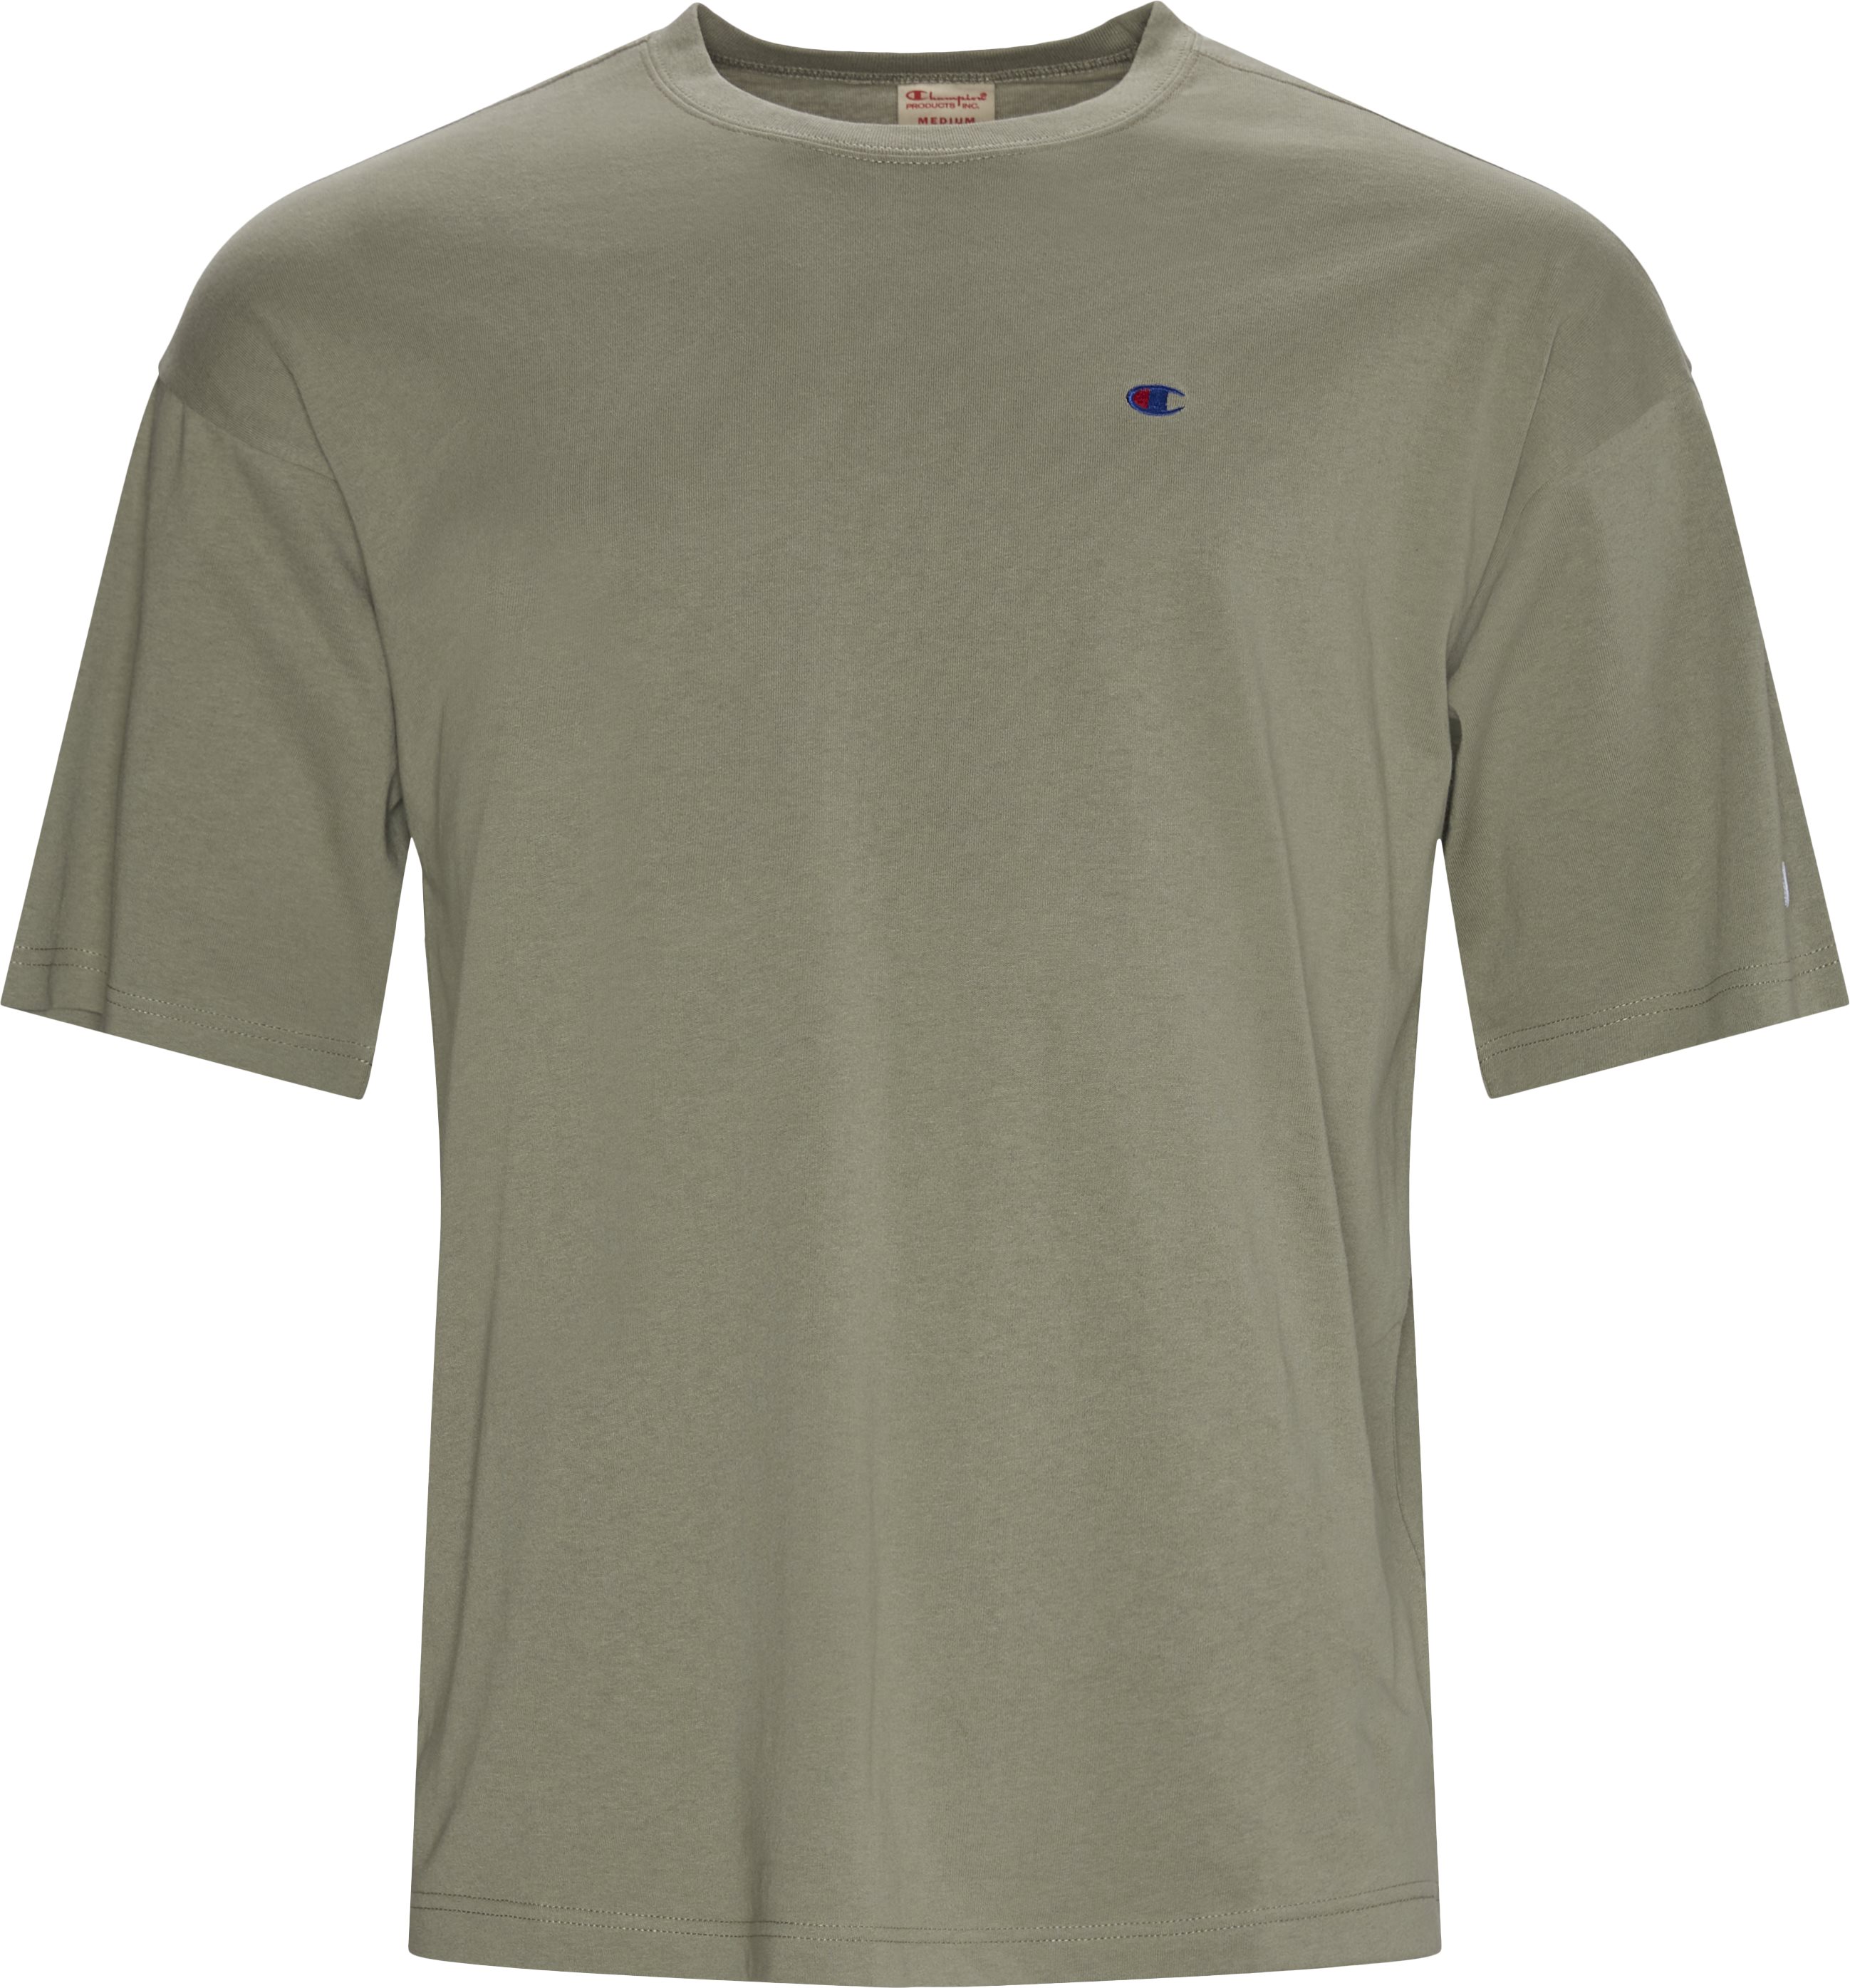 SHAPE Tee - T-shirts - Regular fit - Grøn